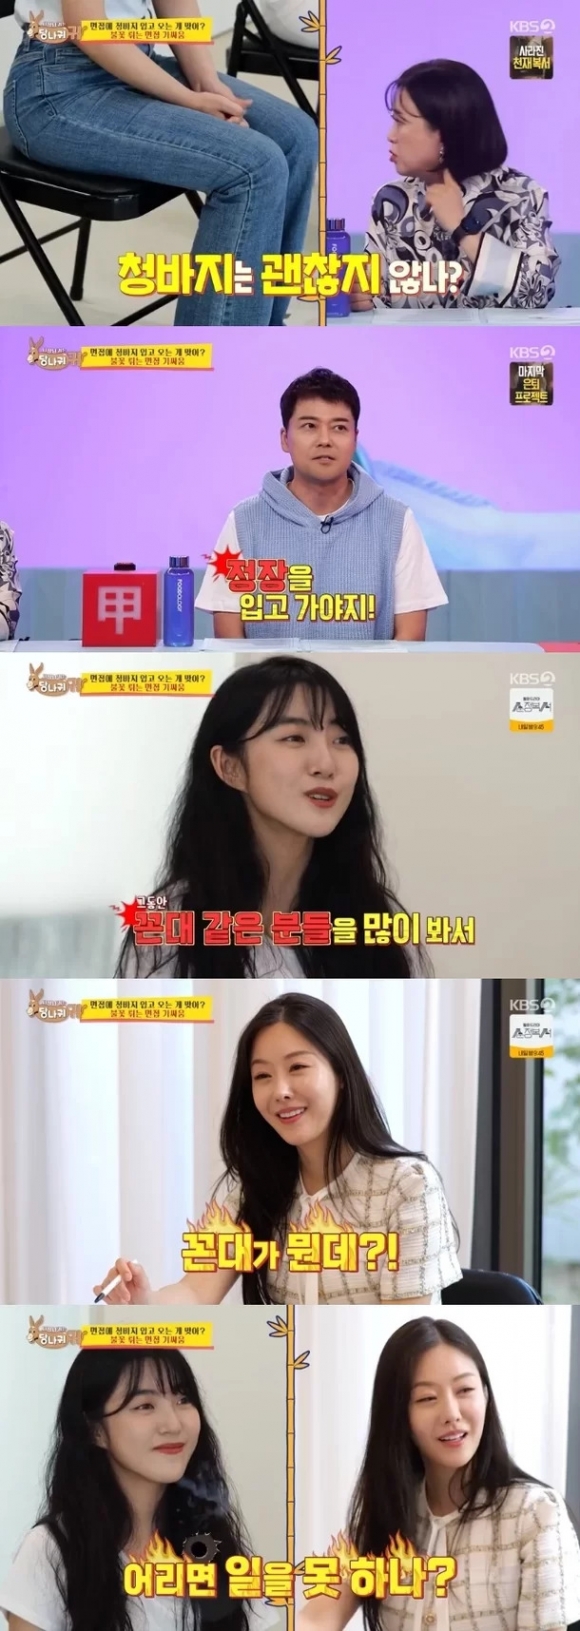 KBS 2TV 예능 ‘사장님 귀는 당나귀 귀’ 화면 캡처